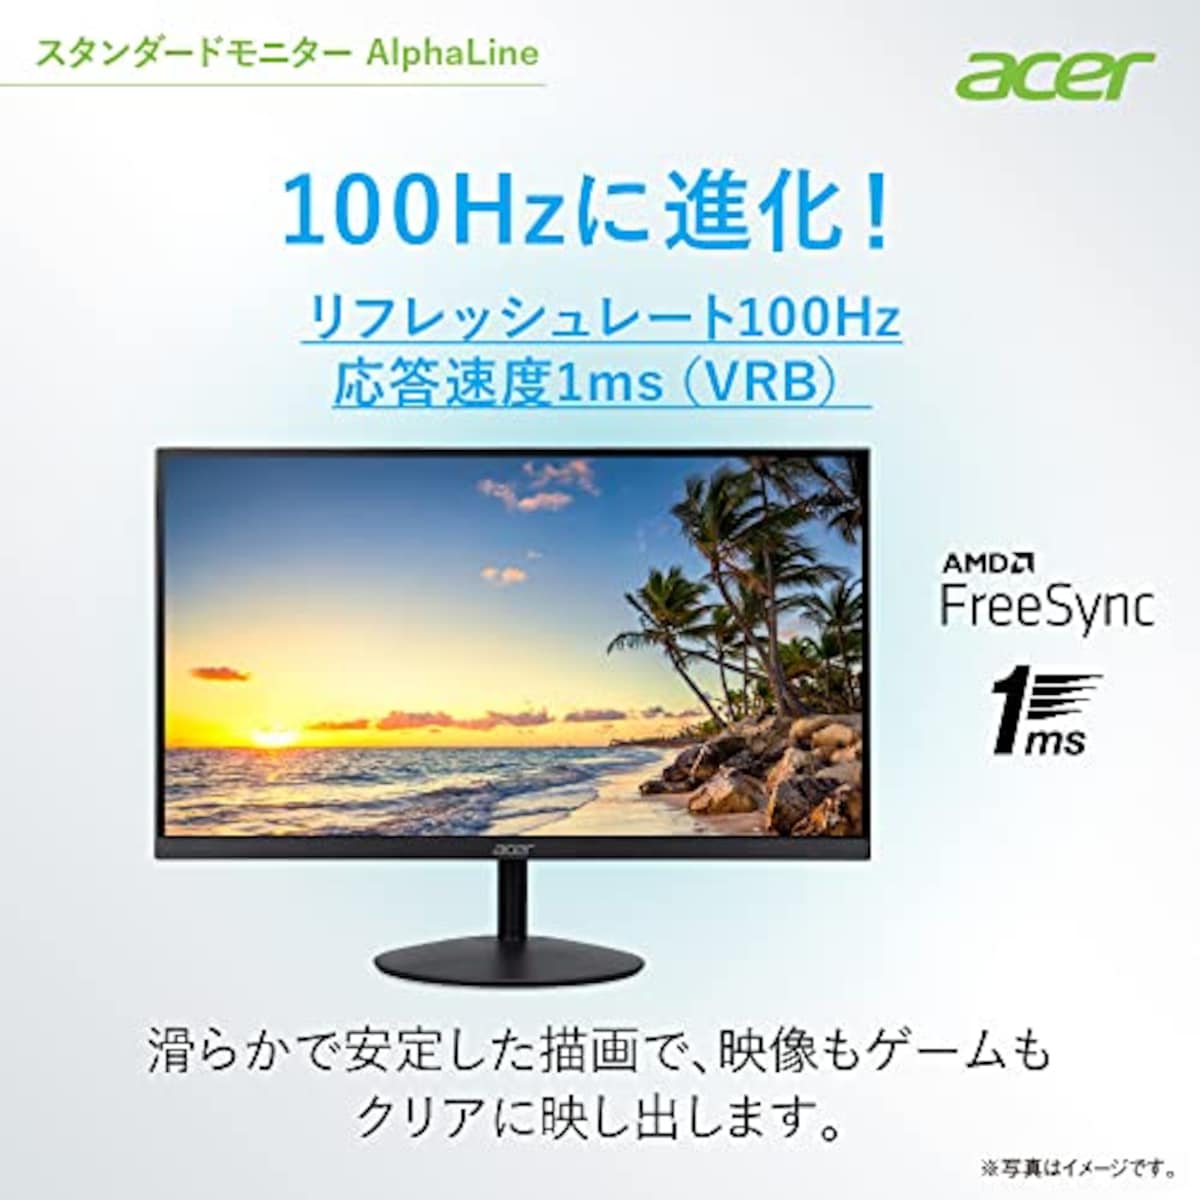  日本エイサー 【Amazon.co.jp限定】 Acer スタンダードモニター 27インチ IPS 非光沢 フルHD 100Hz 1ms HDMI ミニD-Sub15 VESAマウント対応 スピーカー内蔵 ヘッドホン端子 AMD FreeSync SA272Ebmix画像3 